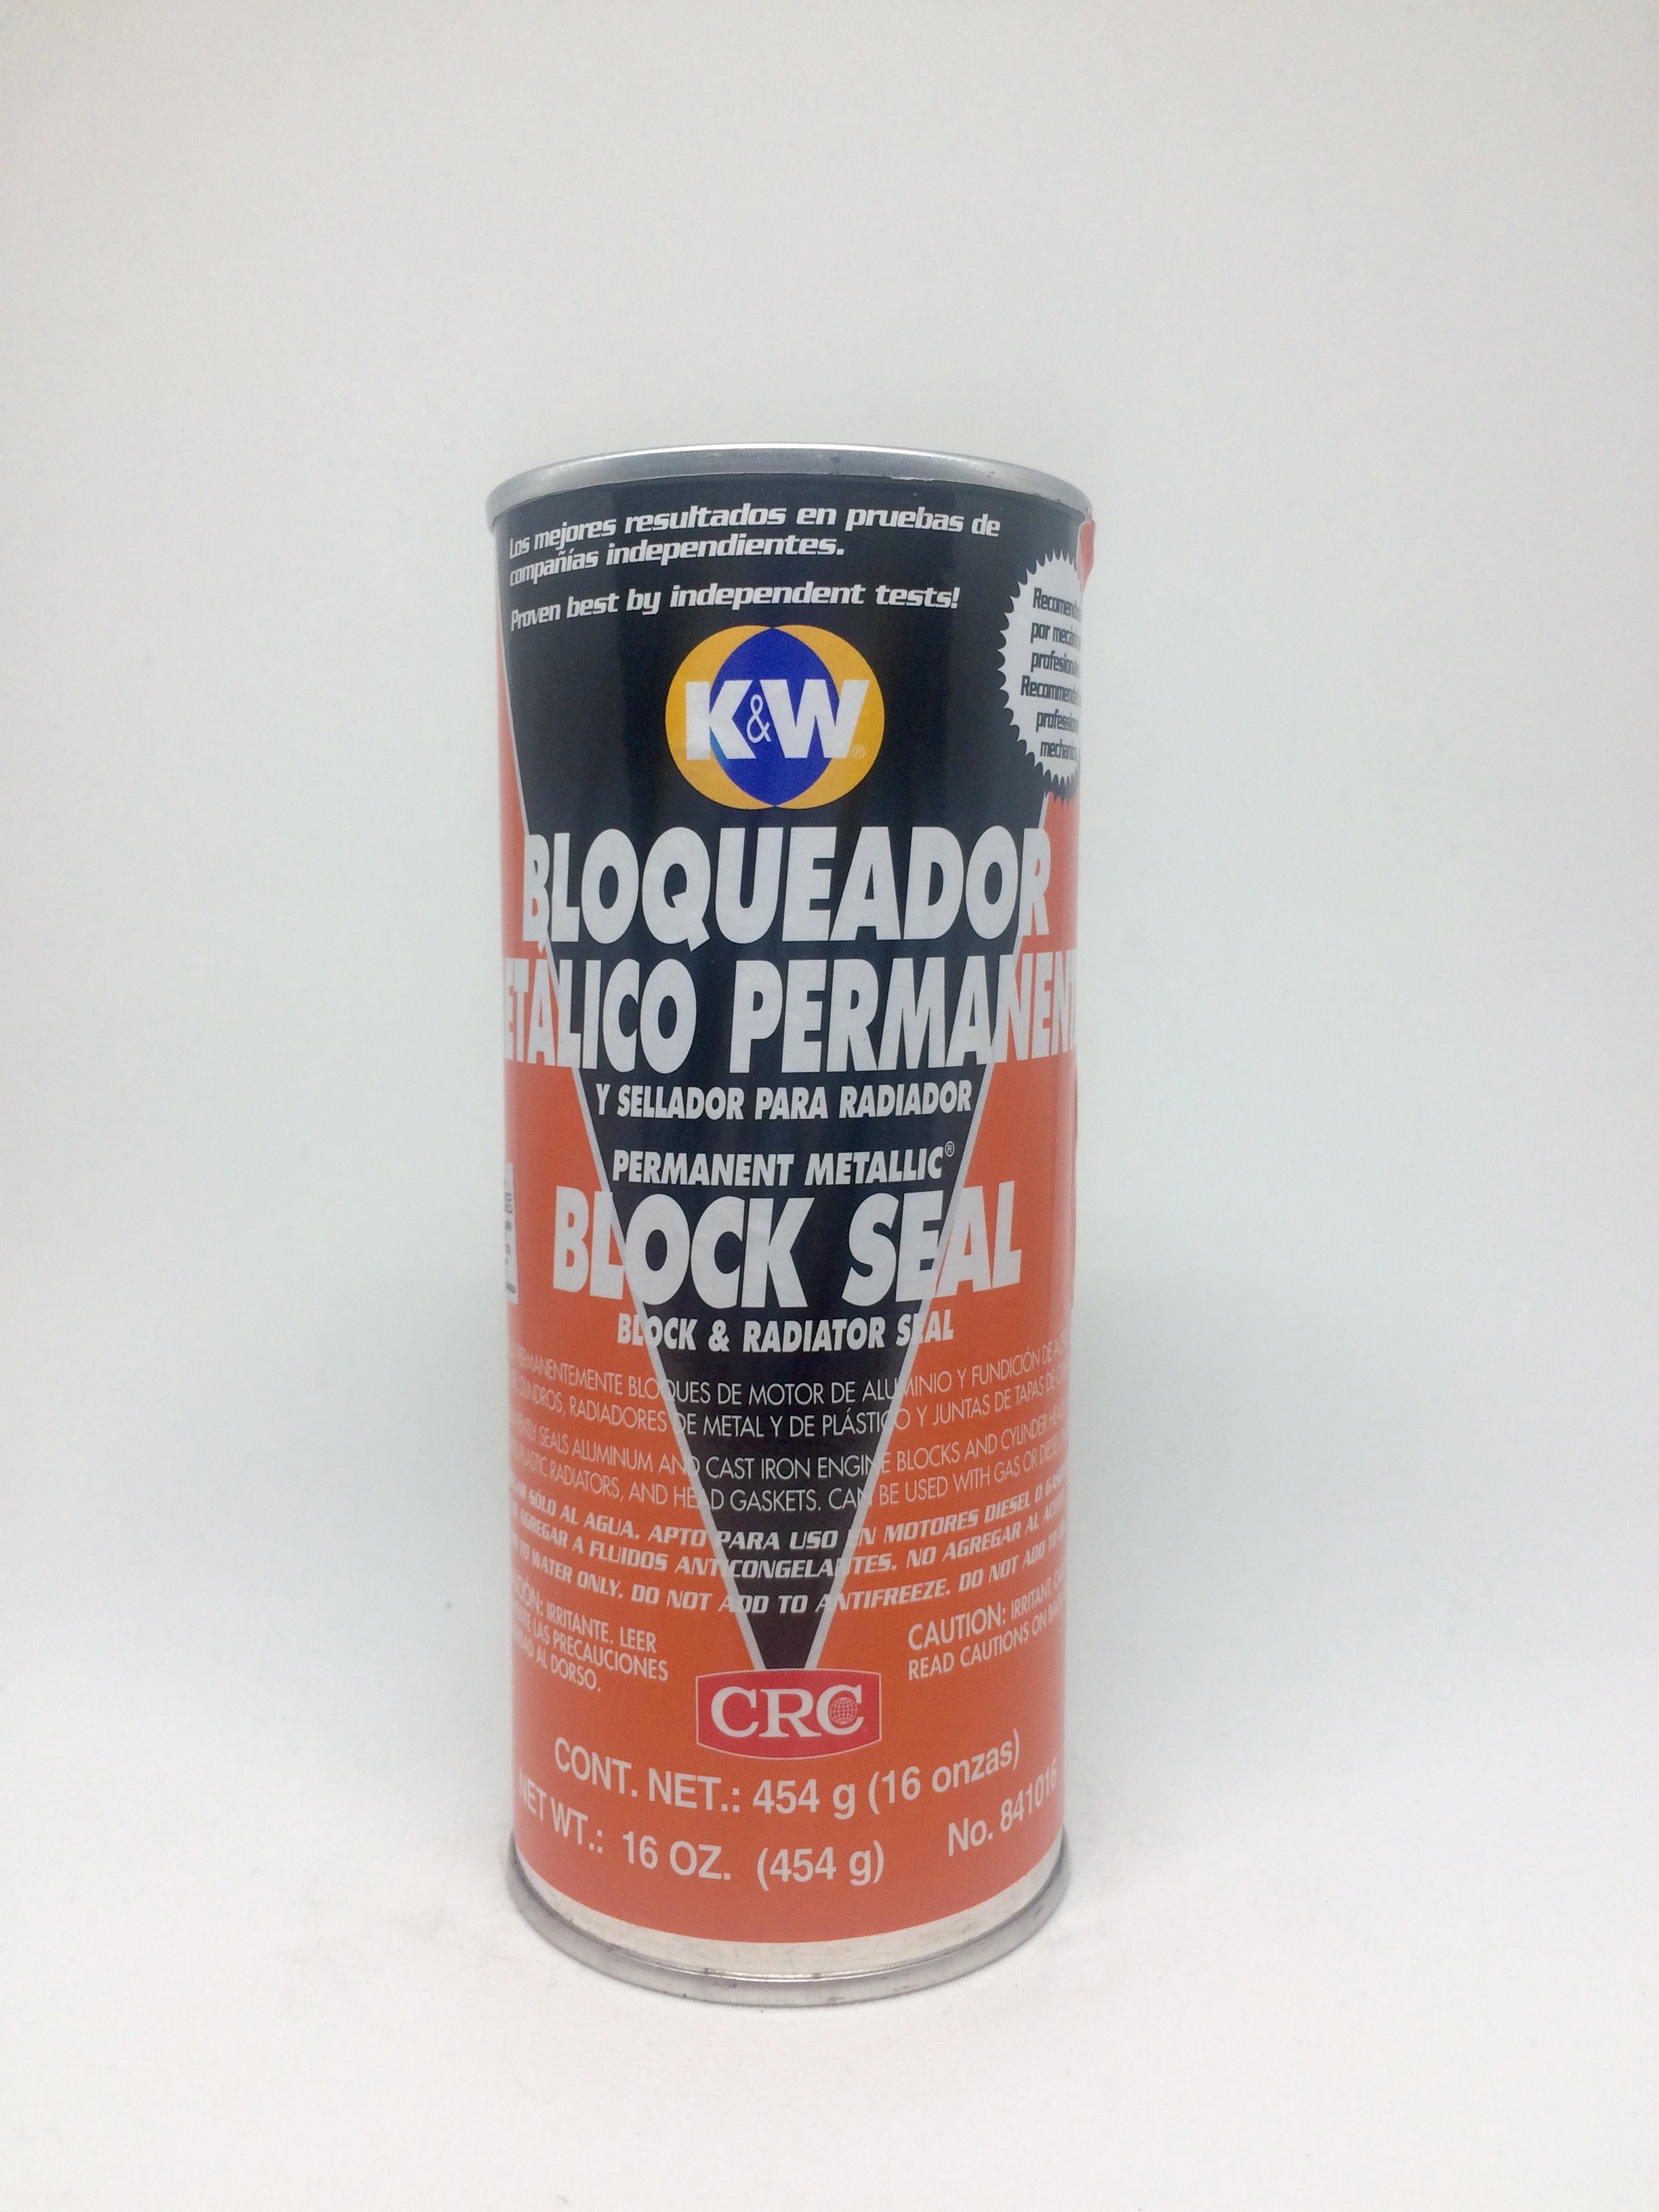 K-Seal Sellante permanente para todo tipo de circuítos de refrigeración